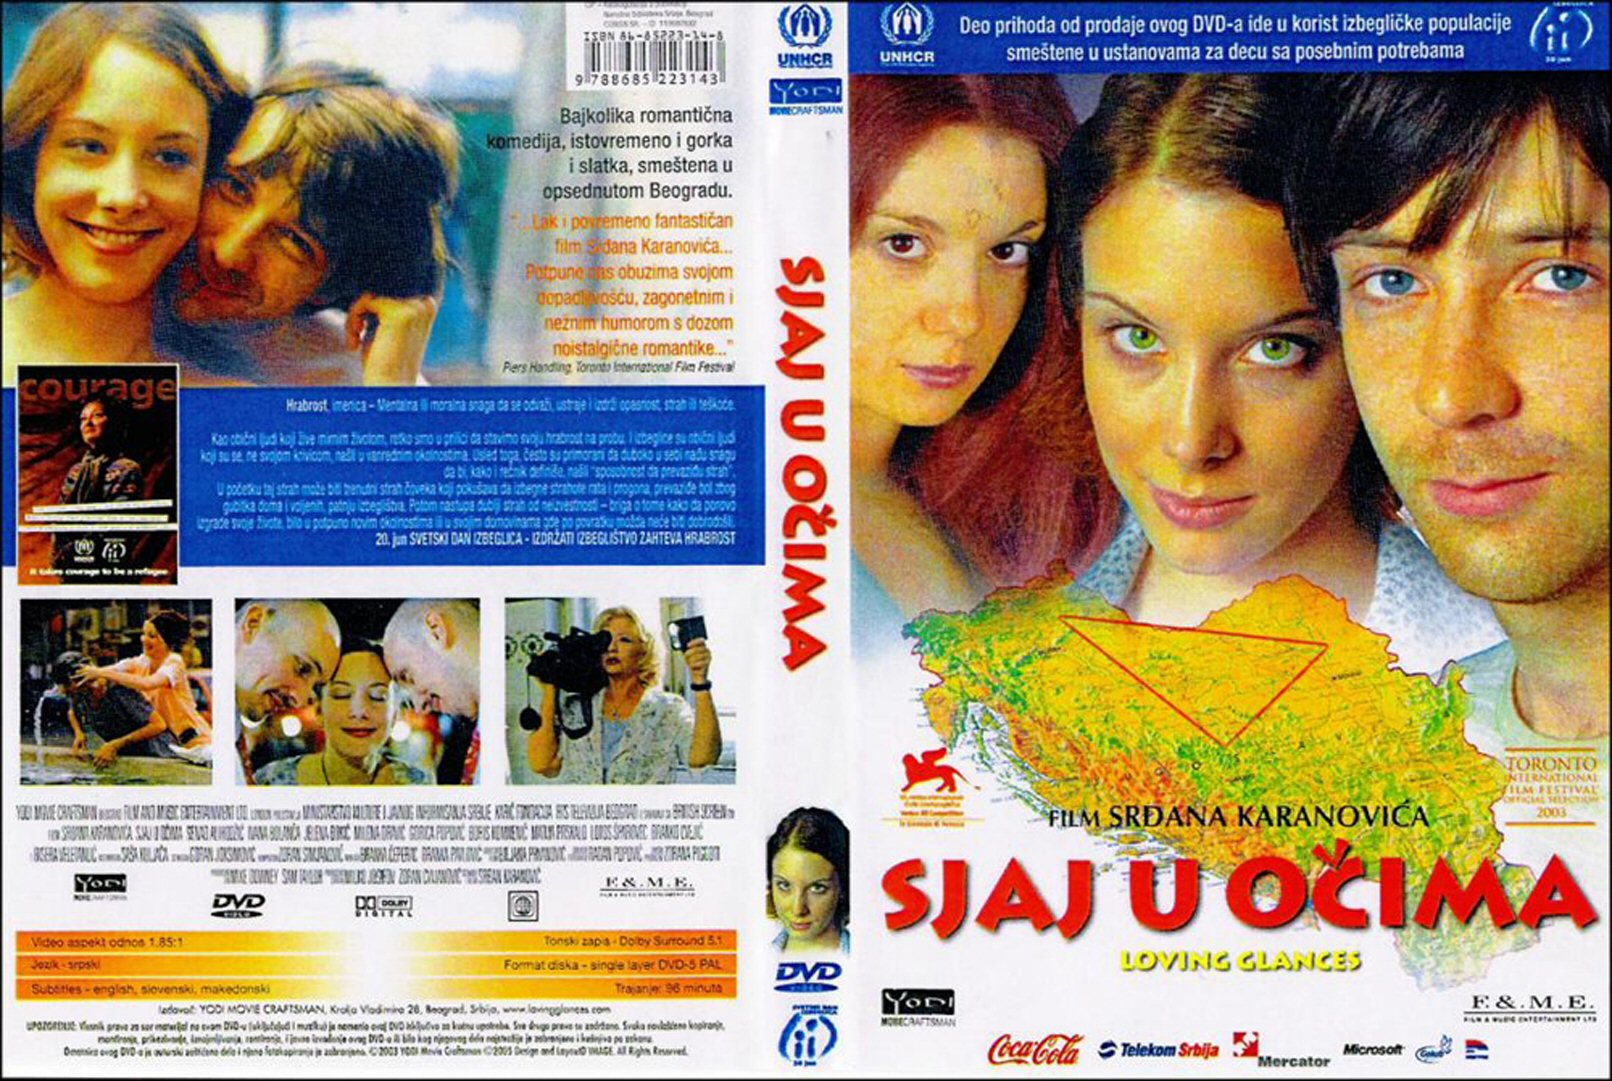 Click to view full size image -  DVD Cover - S - sjaj_u_ocima_dvd - sjaj_u_ocima_dvd.jpg